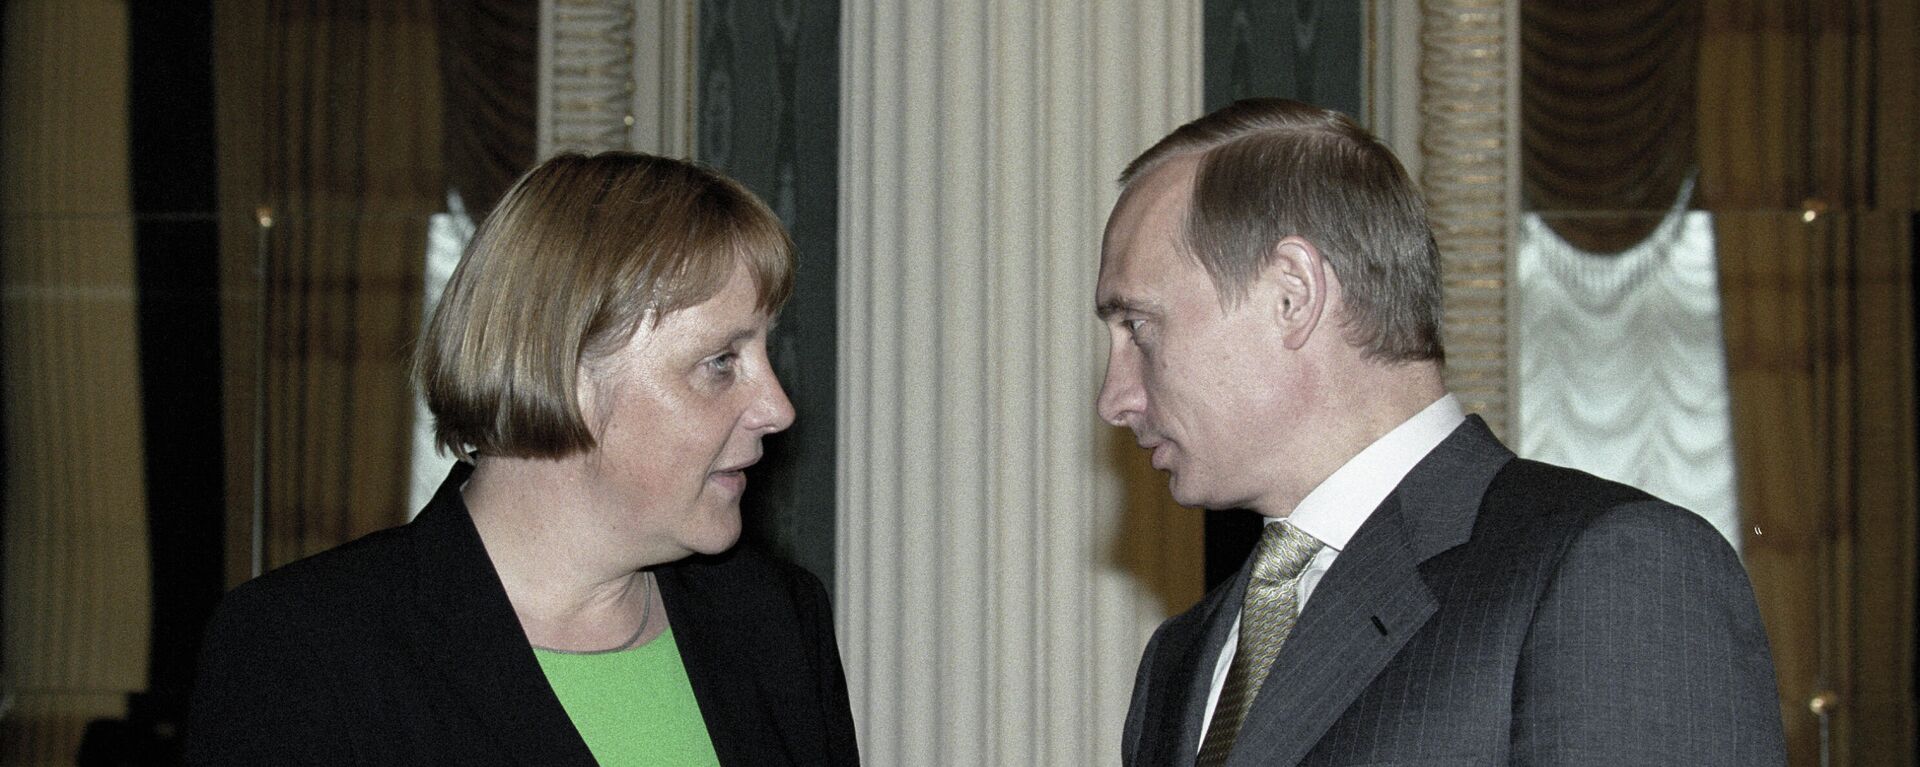 Almanya Başbakanı Angela Merkel ile Rusya Devlet Başkanı Vladimir Putin - Sputnik Türkiye, 1920, 23.10.2021